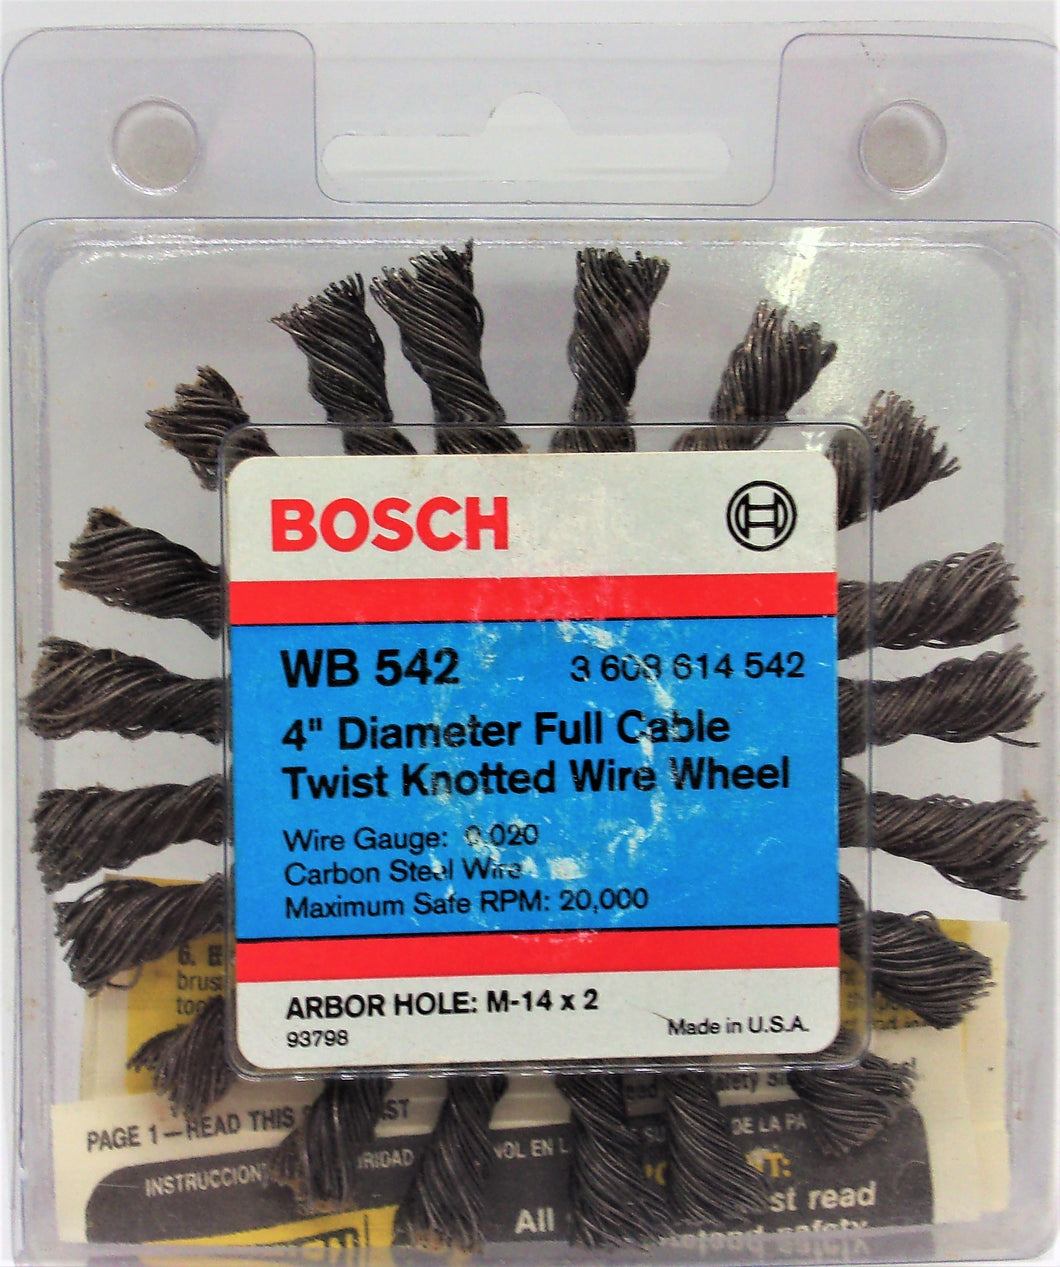 Bosch WB 542 Rueda de alambre anudado trenzado con cable completo de acero inoxidable de 4